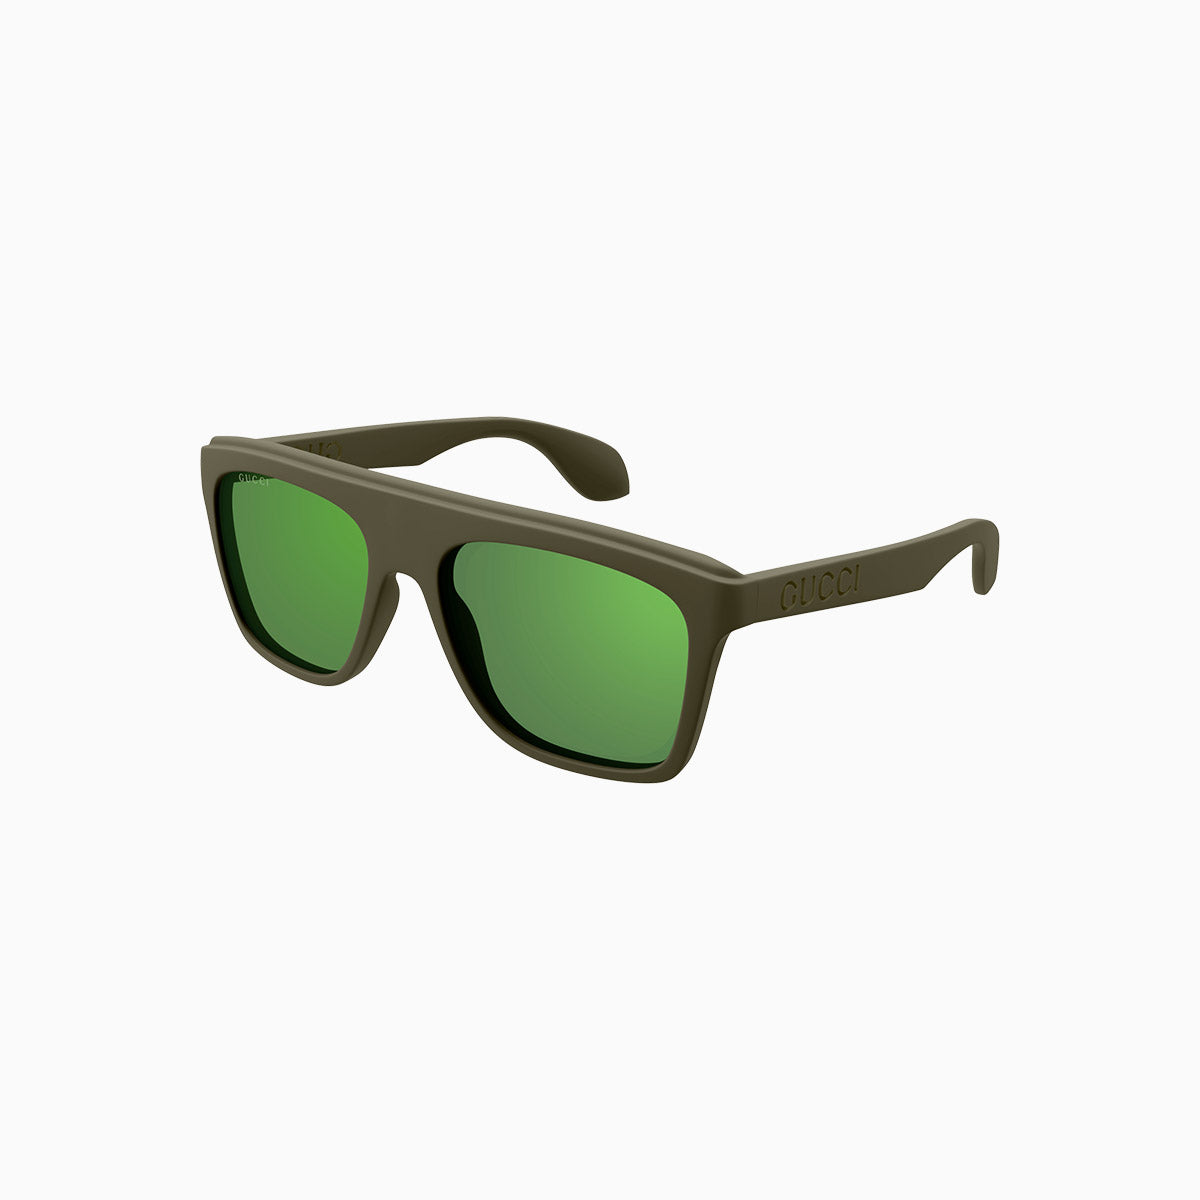 mens-gucci-green-lettering-sunglasses-gg1570s-005